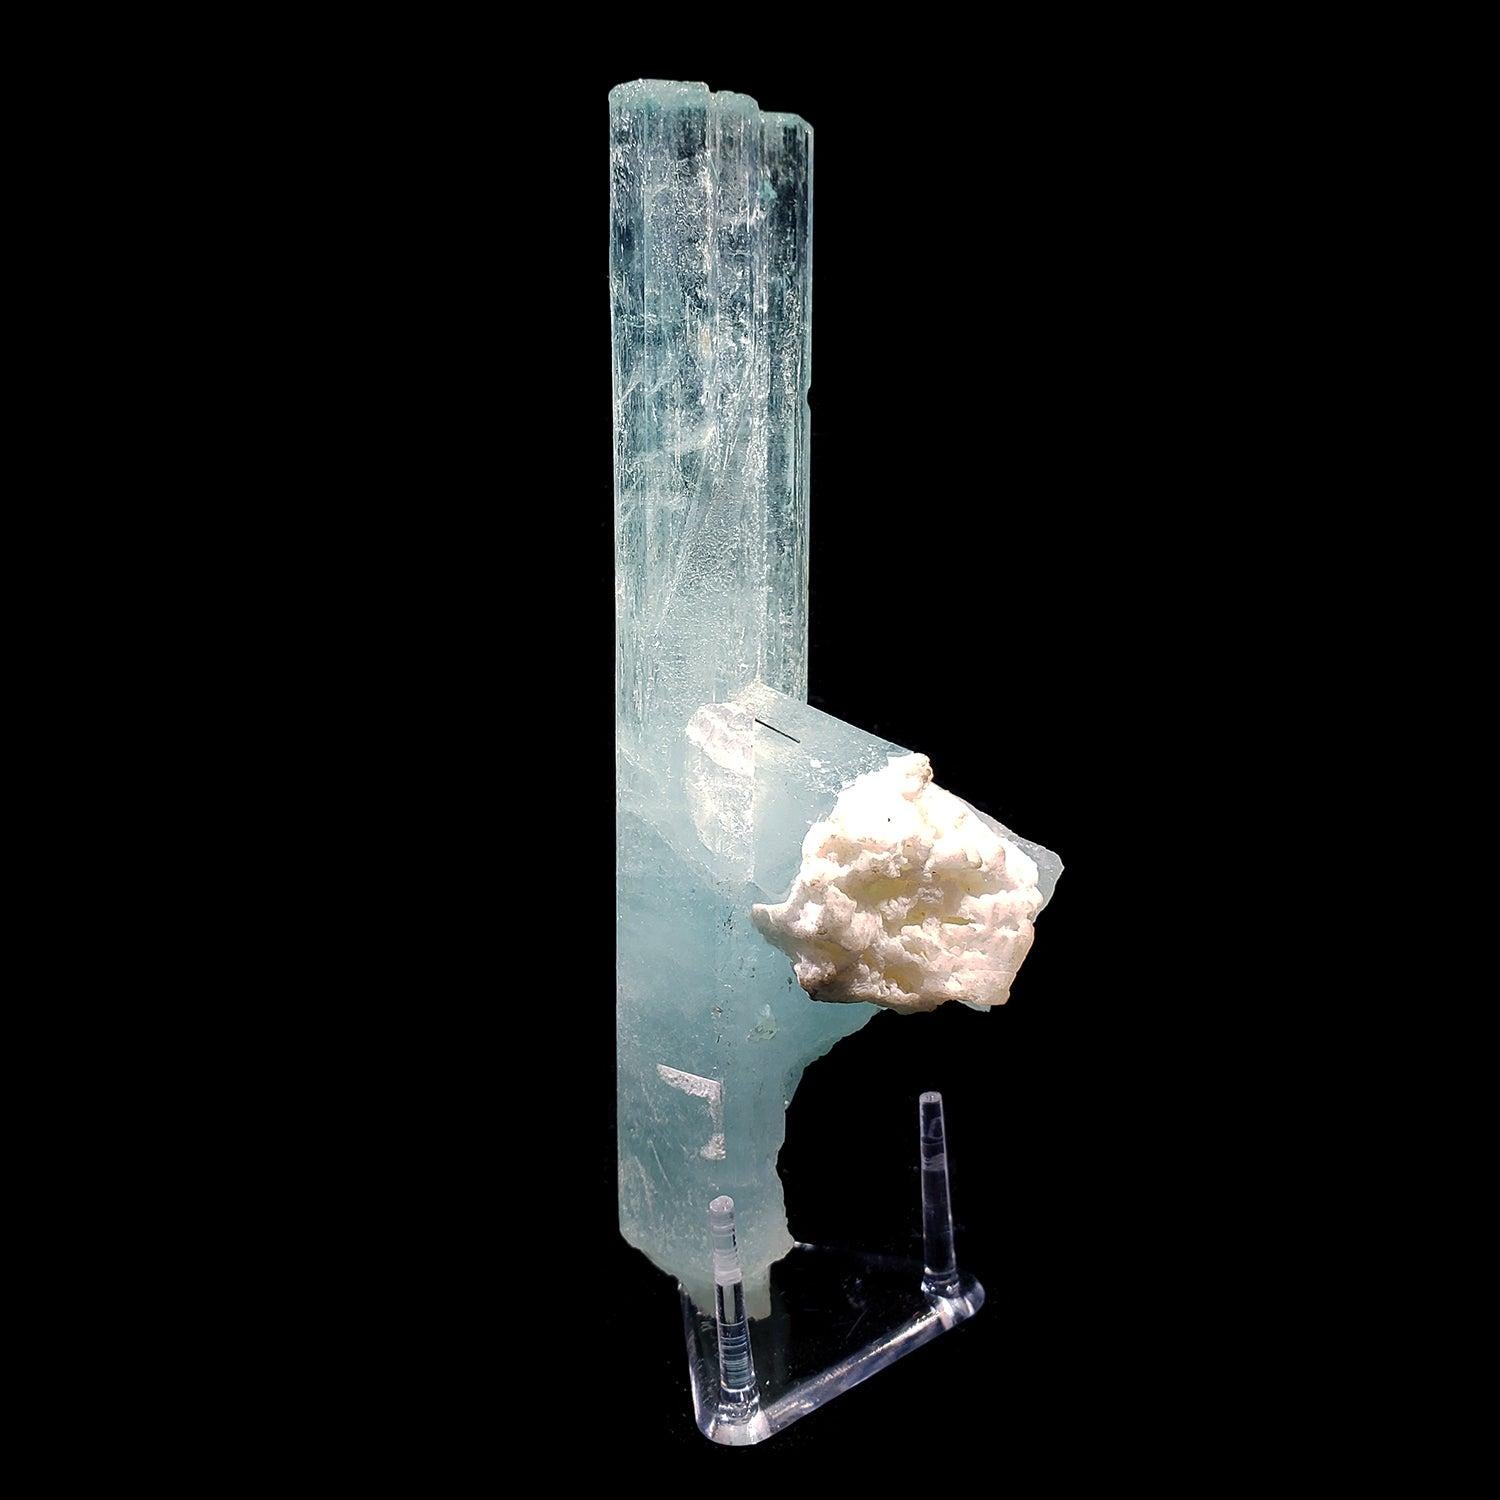 Gilgit, Pakistan

Ce spécimen d'aigue-marine présente une inclusion de tourmaline noire et un cristal secondaire d'aigue-marine qui en sort, avec une matrice de feldspath qui lui est attachée.

Dimensions : 1,25 